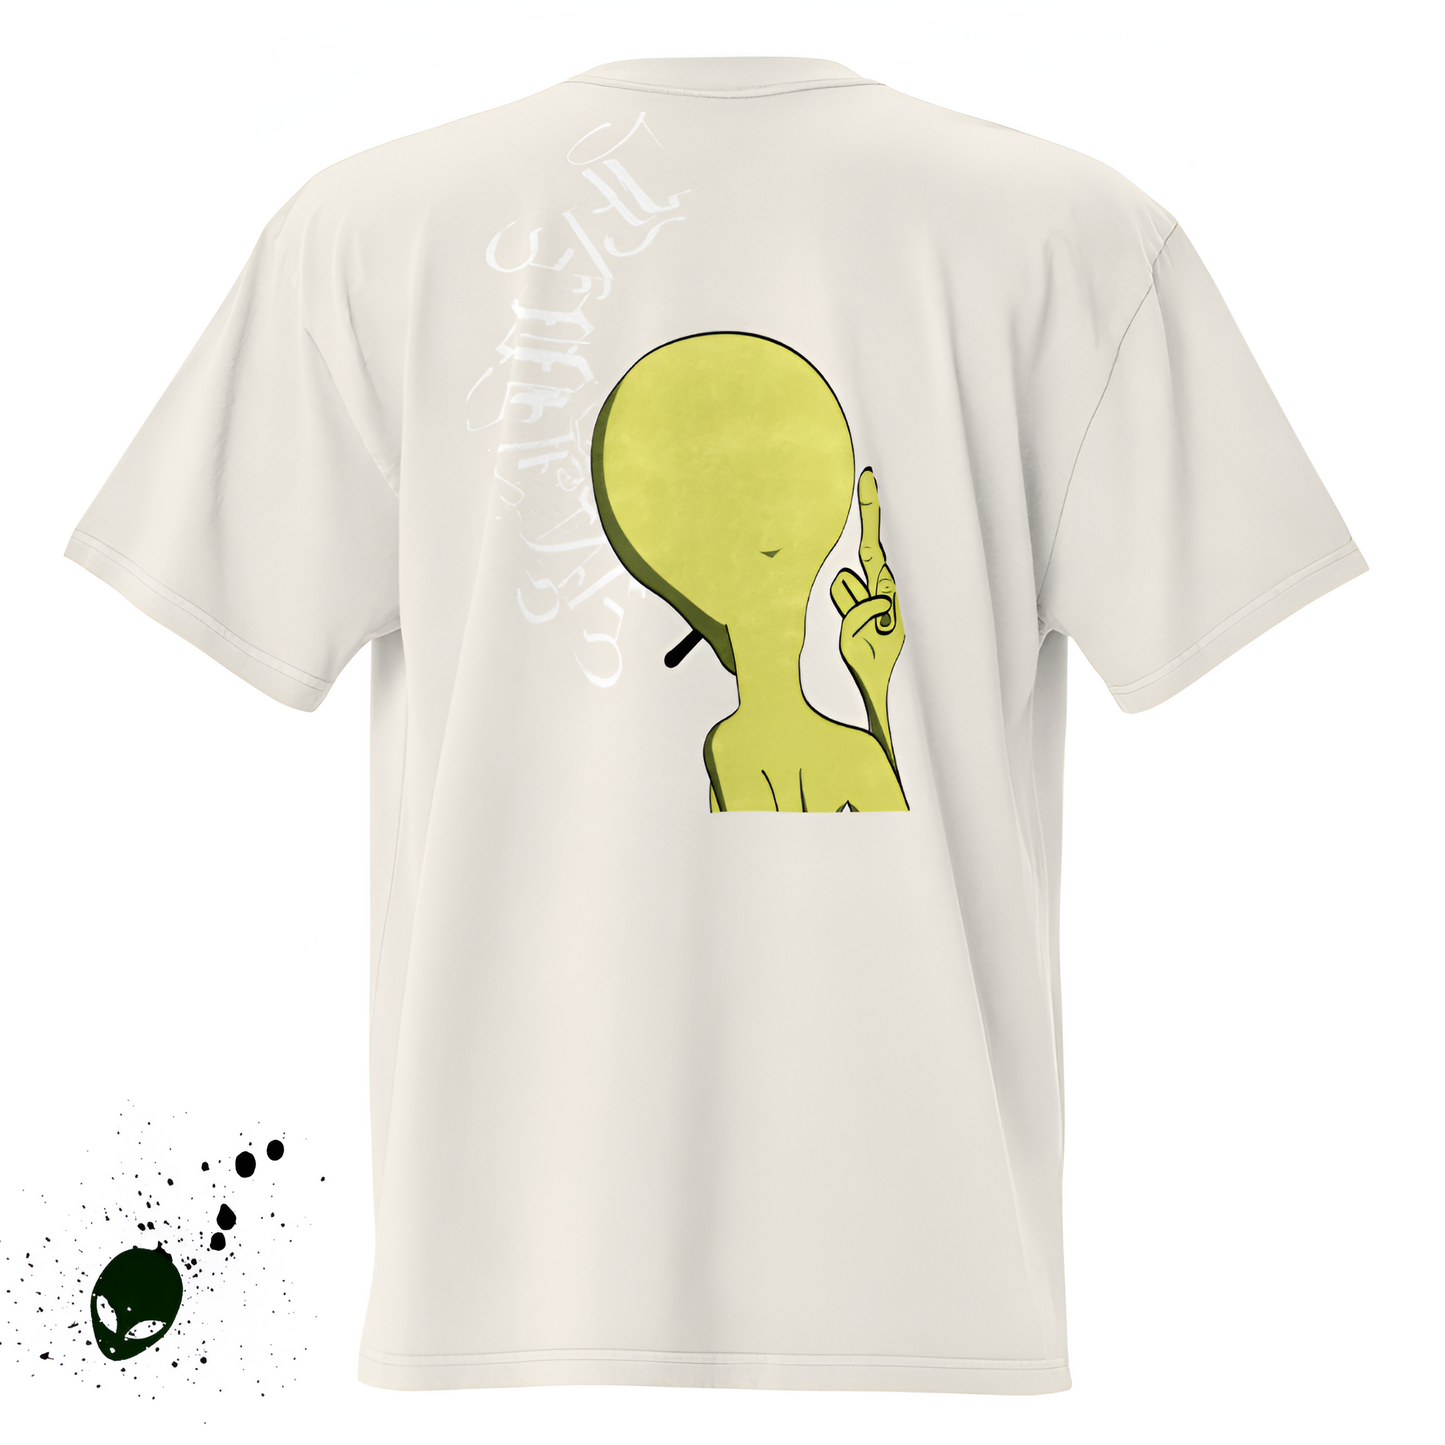 Oversaik Galactic T-shirt